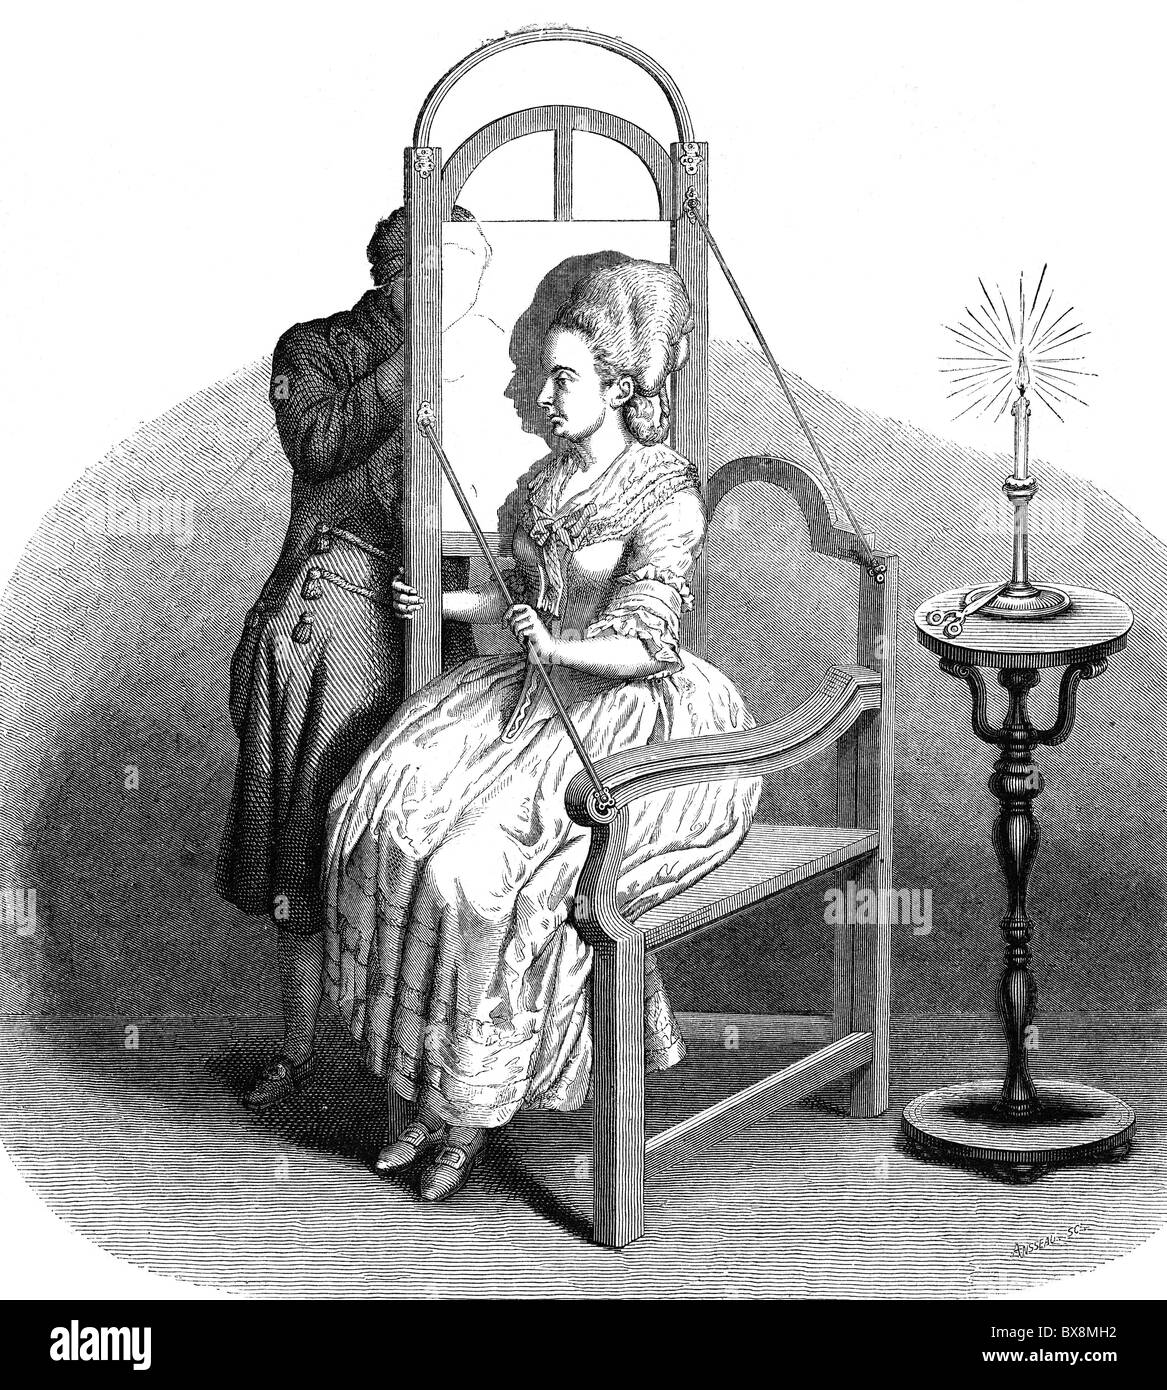 Personnes, professions, coupe-silhouette, chaise de silhouette au XVIIIe siècle, gravure en bois après dessin par E. Lorsay, vers 1880, droits additionnels-Clearences-non disponible Banque D'Images